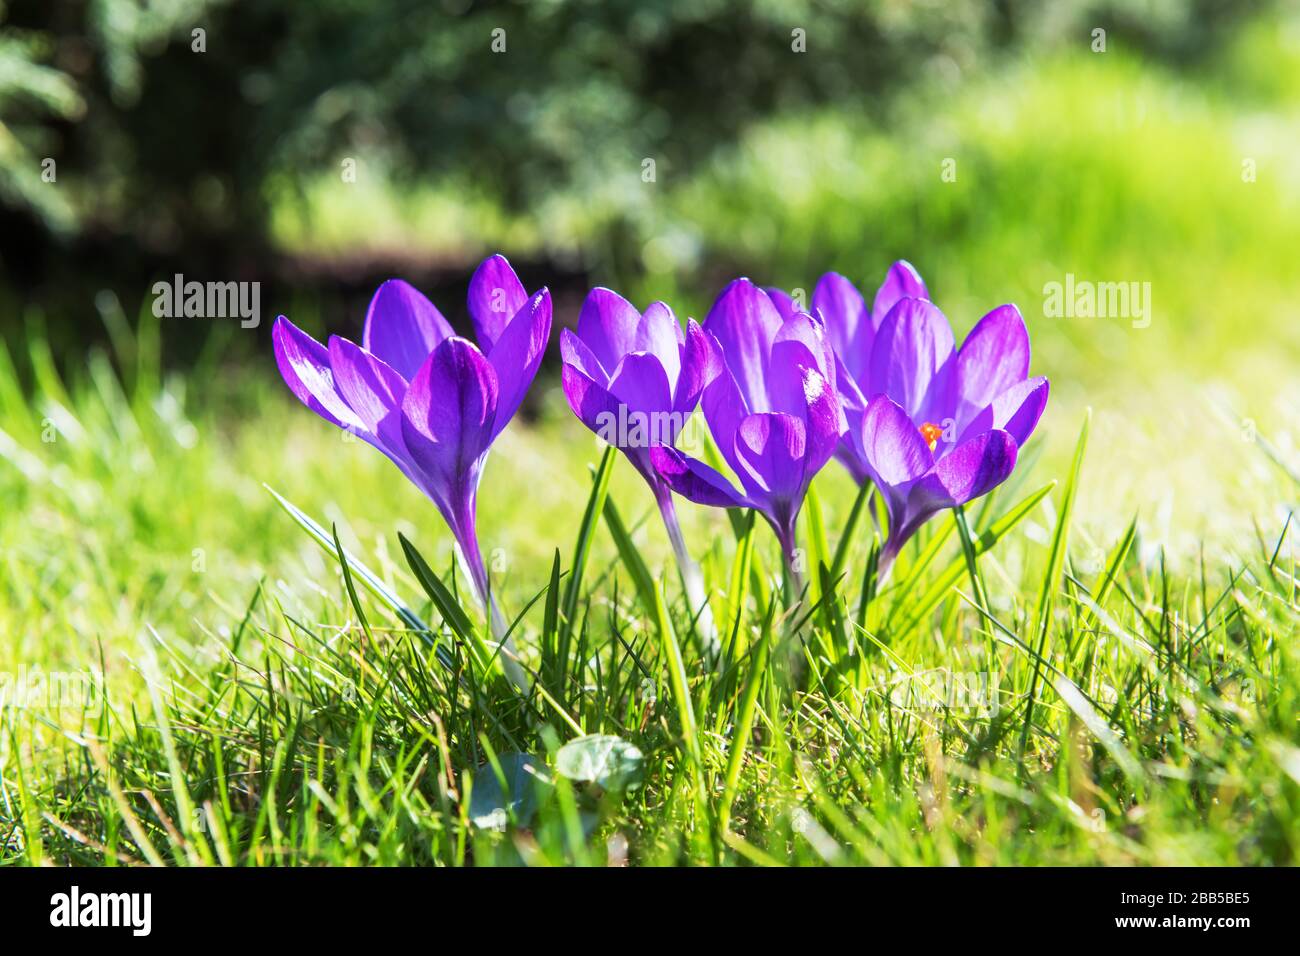 Primavera flor crocus en verde hierba primer plano. Fotografía de la naturaleza Foto de stock